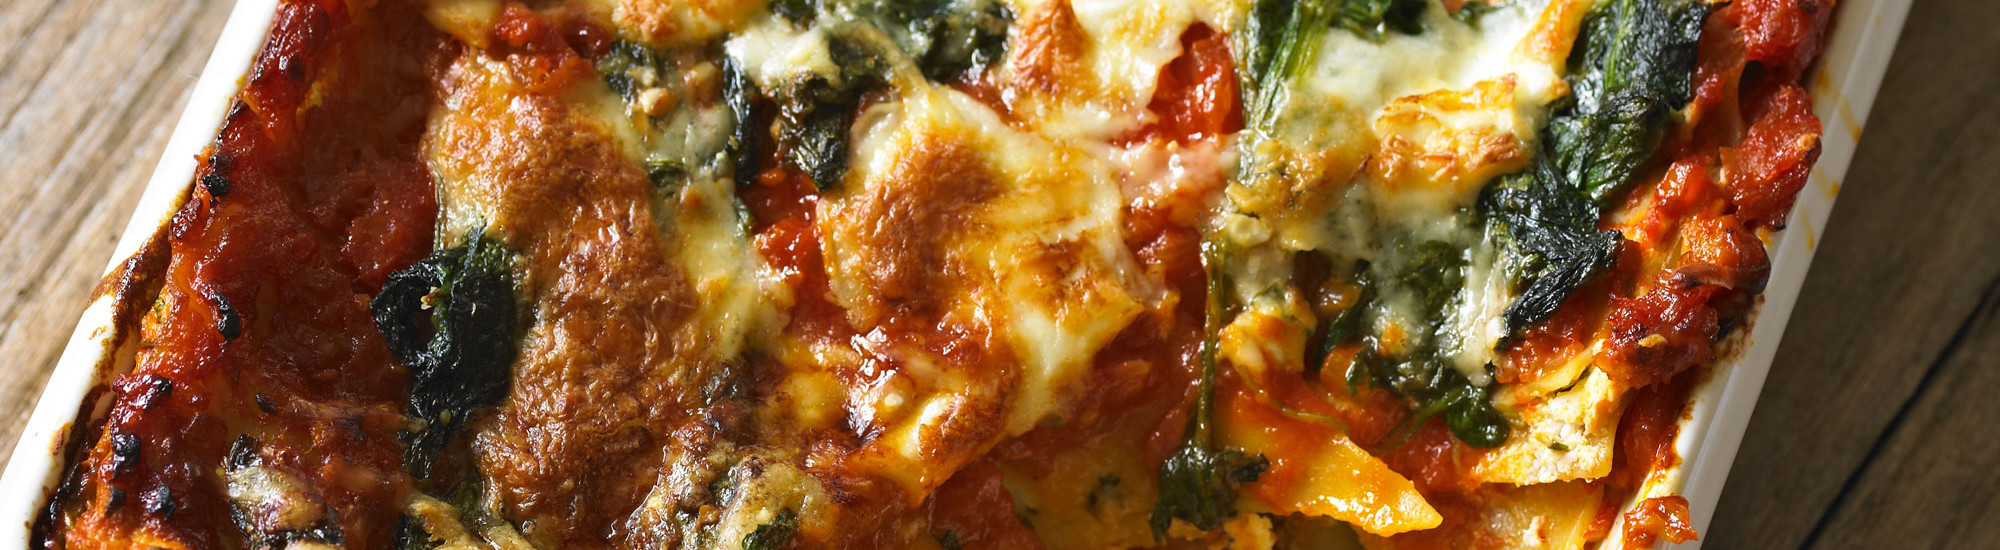 Tomato, spinach and three-cheese lasagne recipe